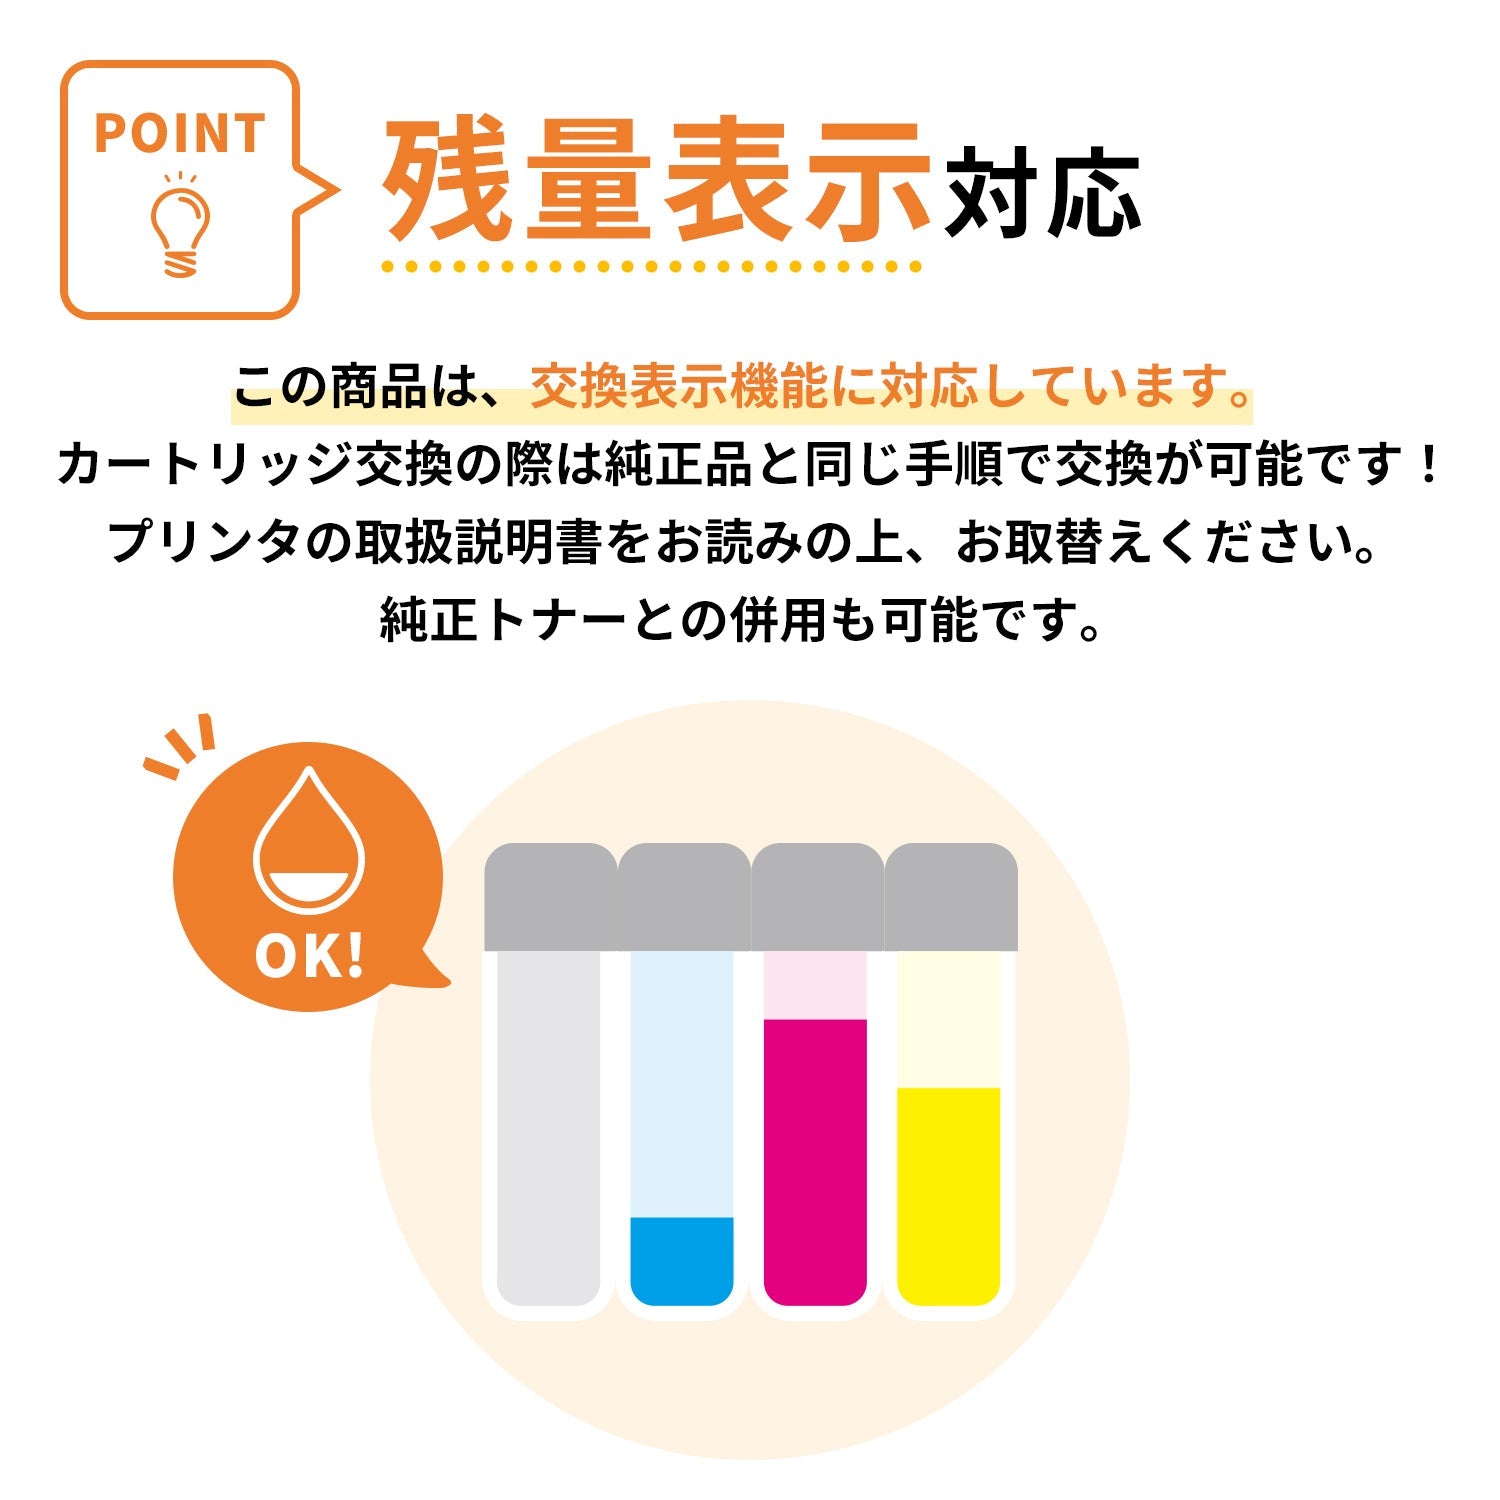 富士フイルム用 CT201399-401 互換トナー カラー3色